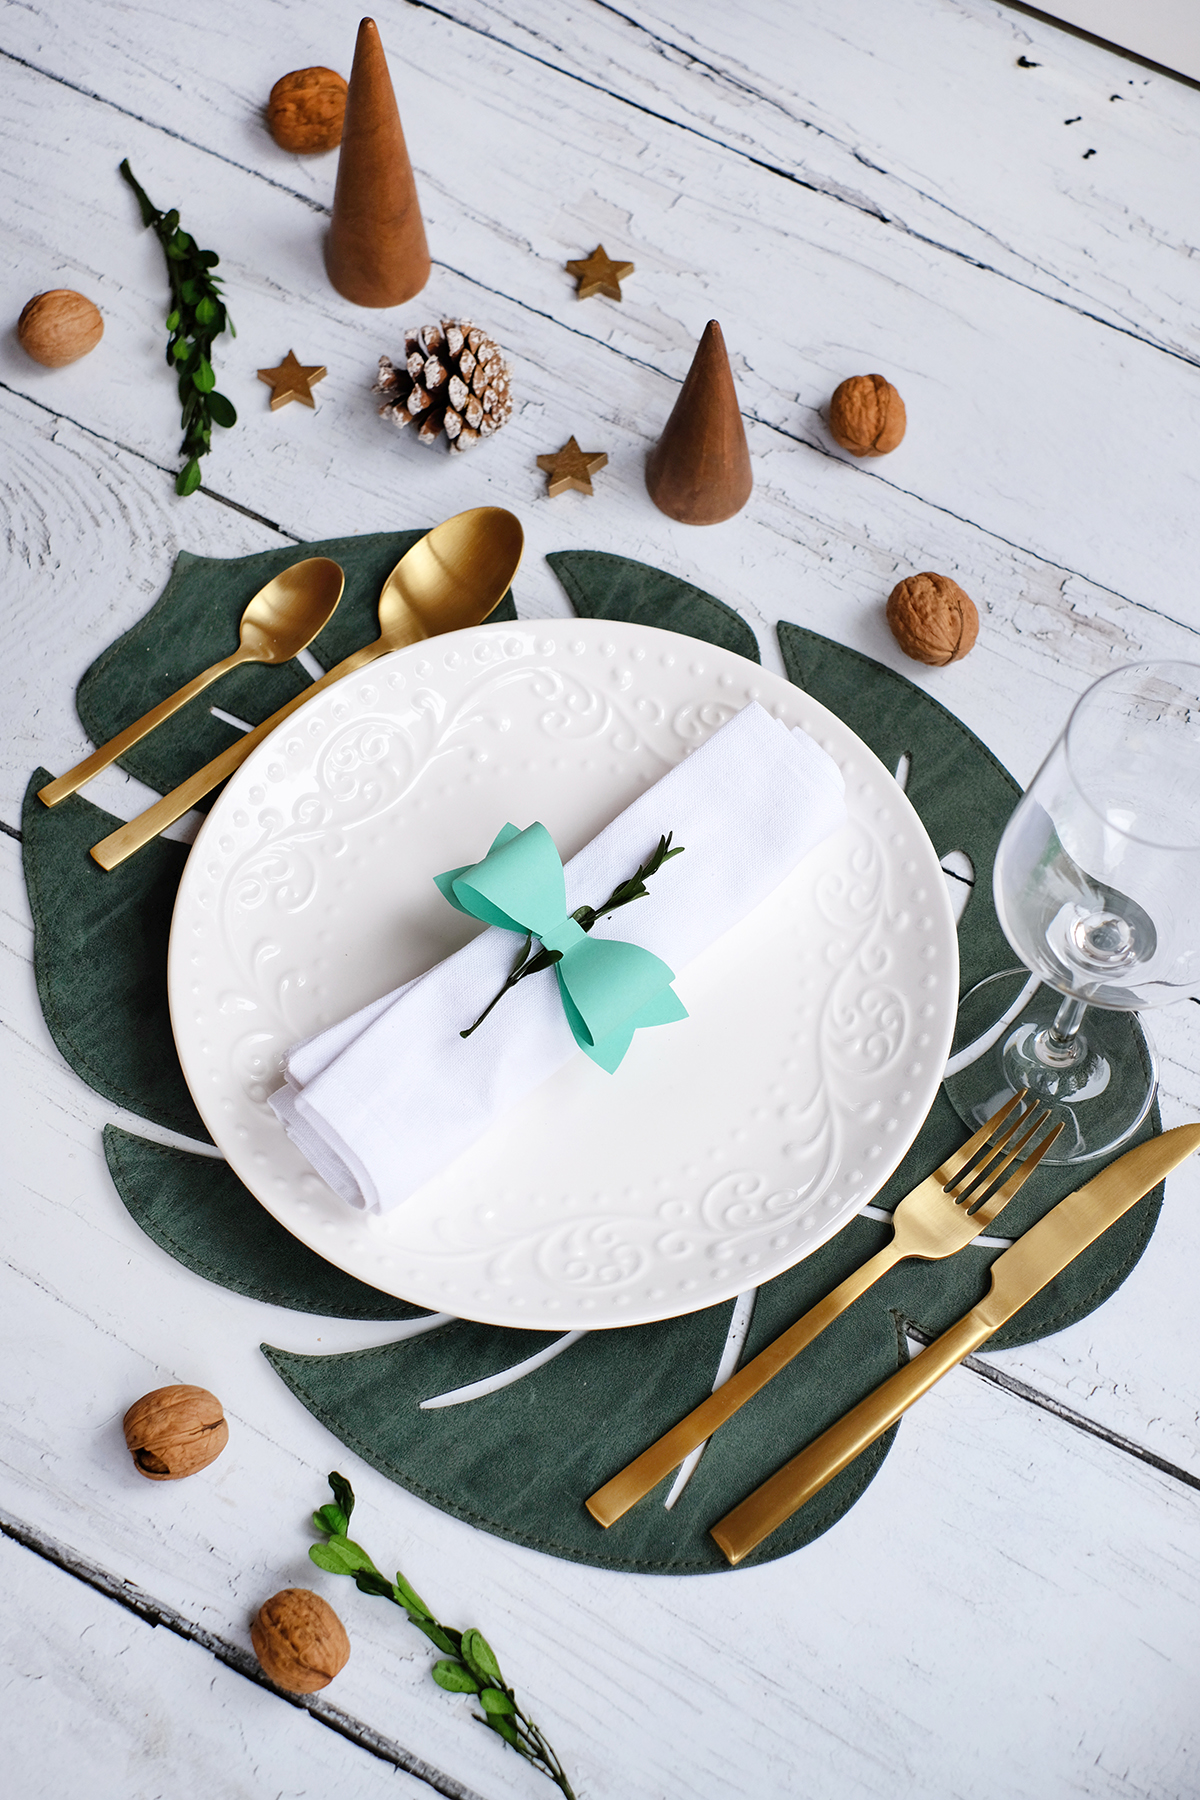 DIYnachten mit Datacolor und dem ColorReader EZ - Frablich passende Tischdeko für Weihnachten von Gingered Things